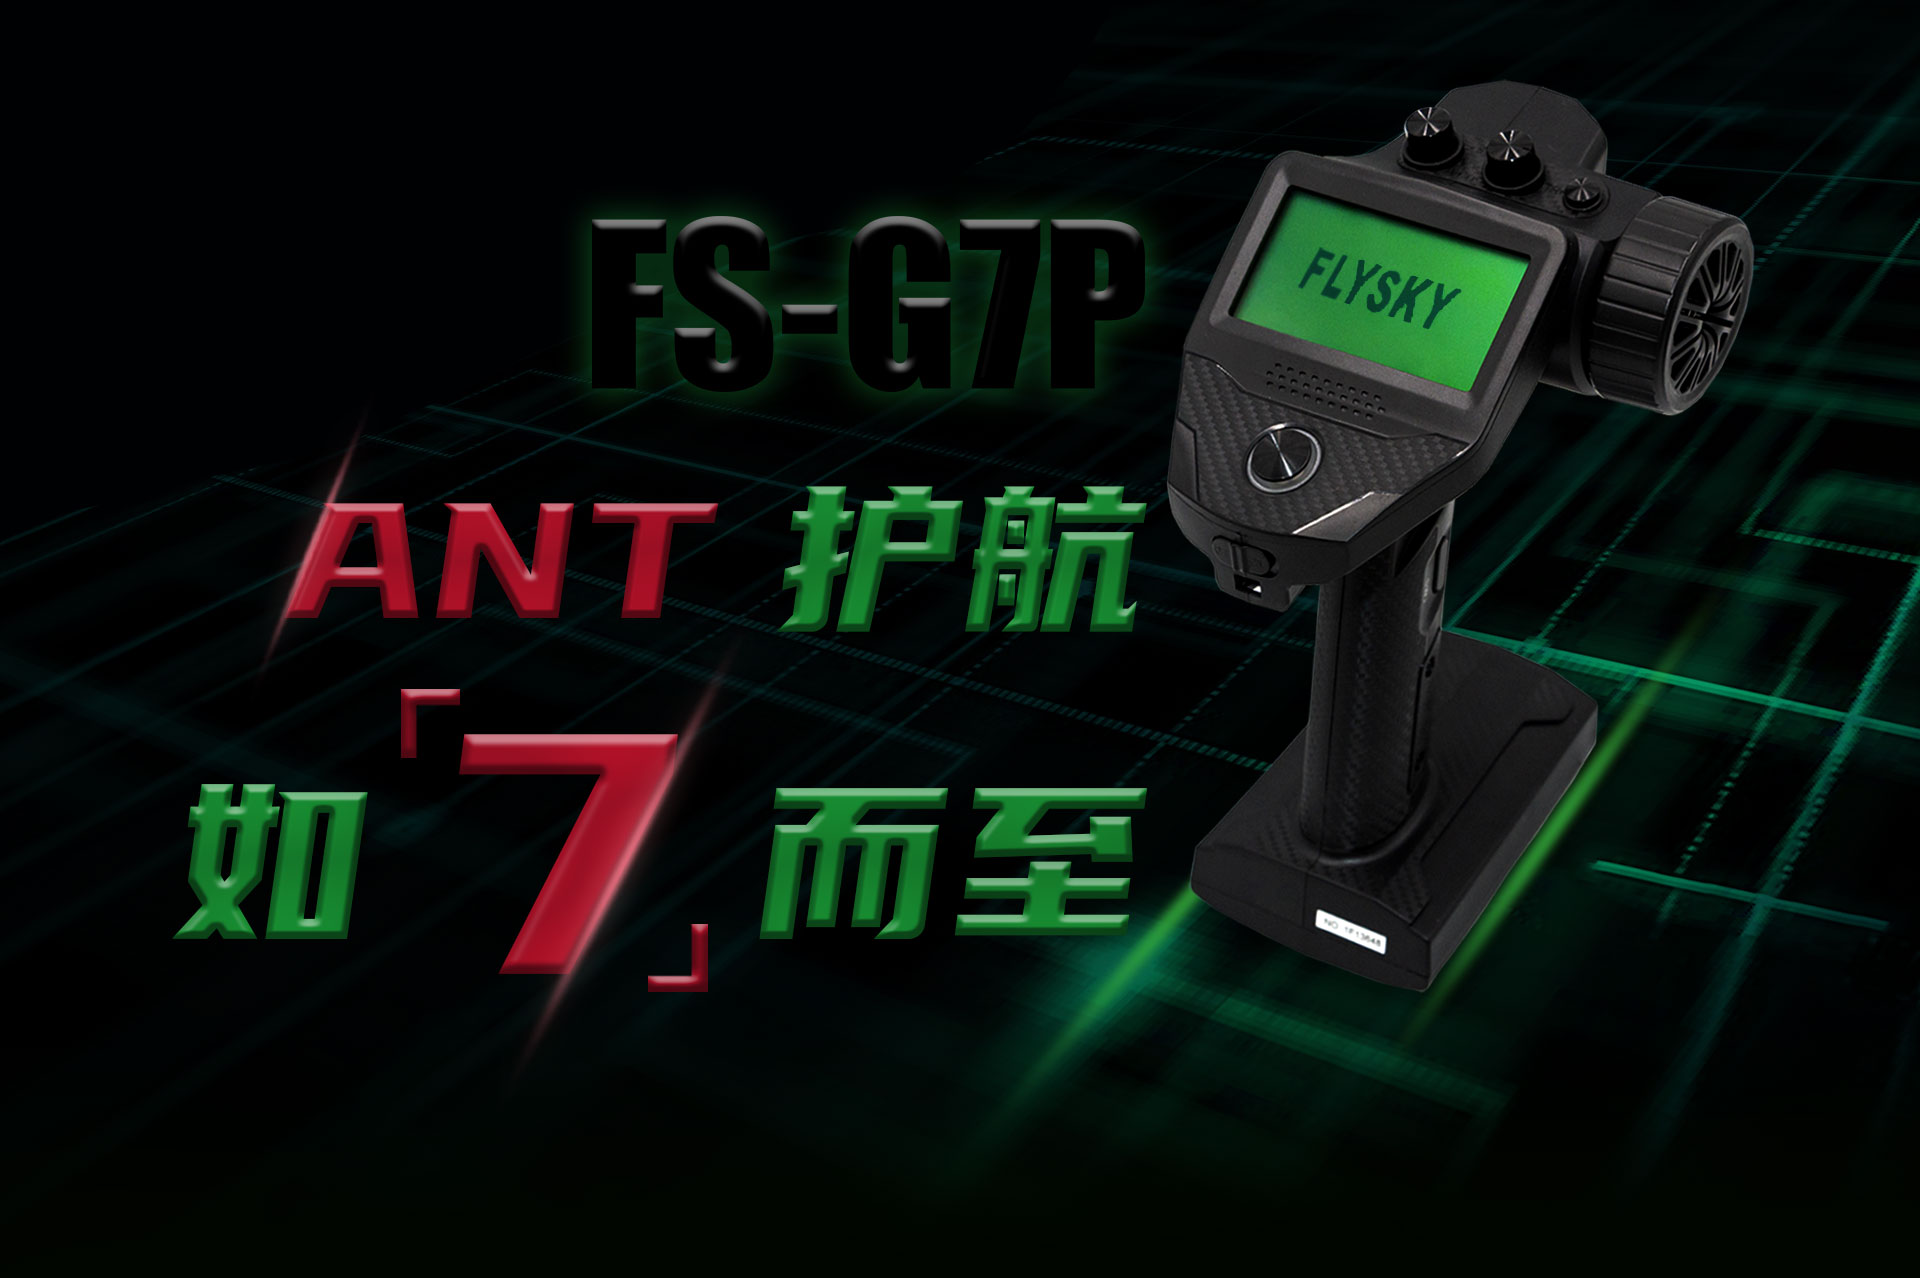 FS-G7P